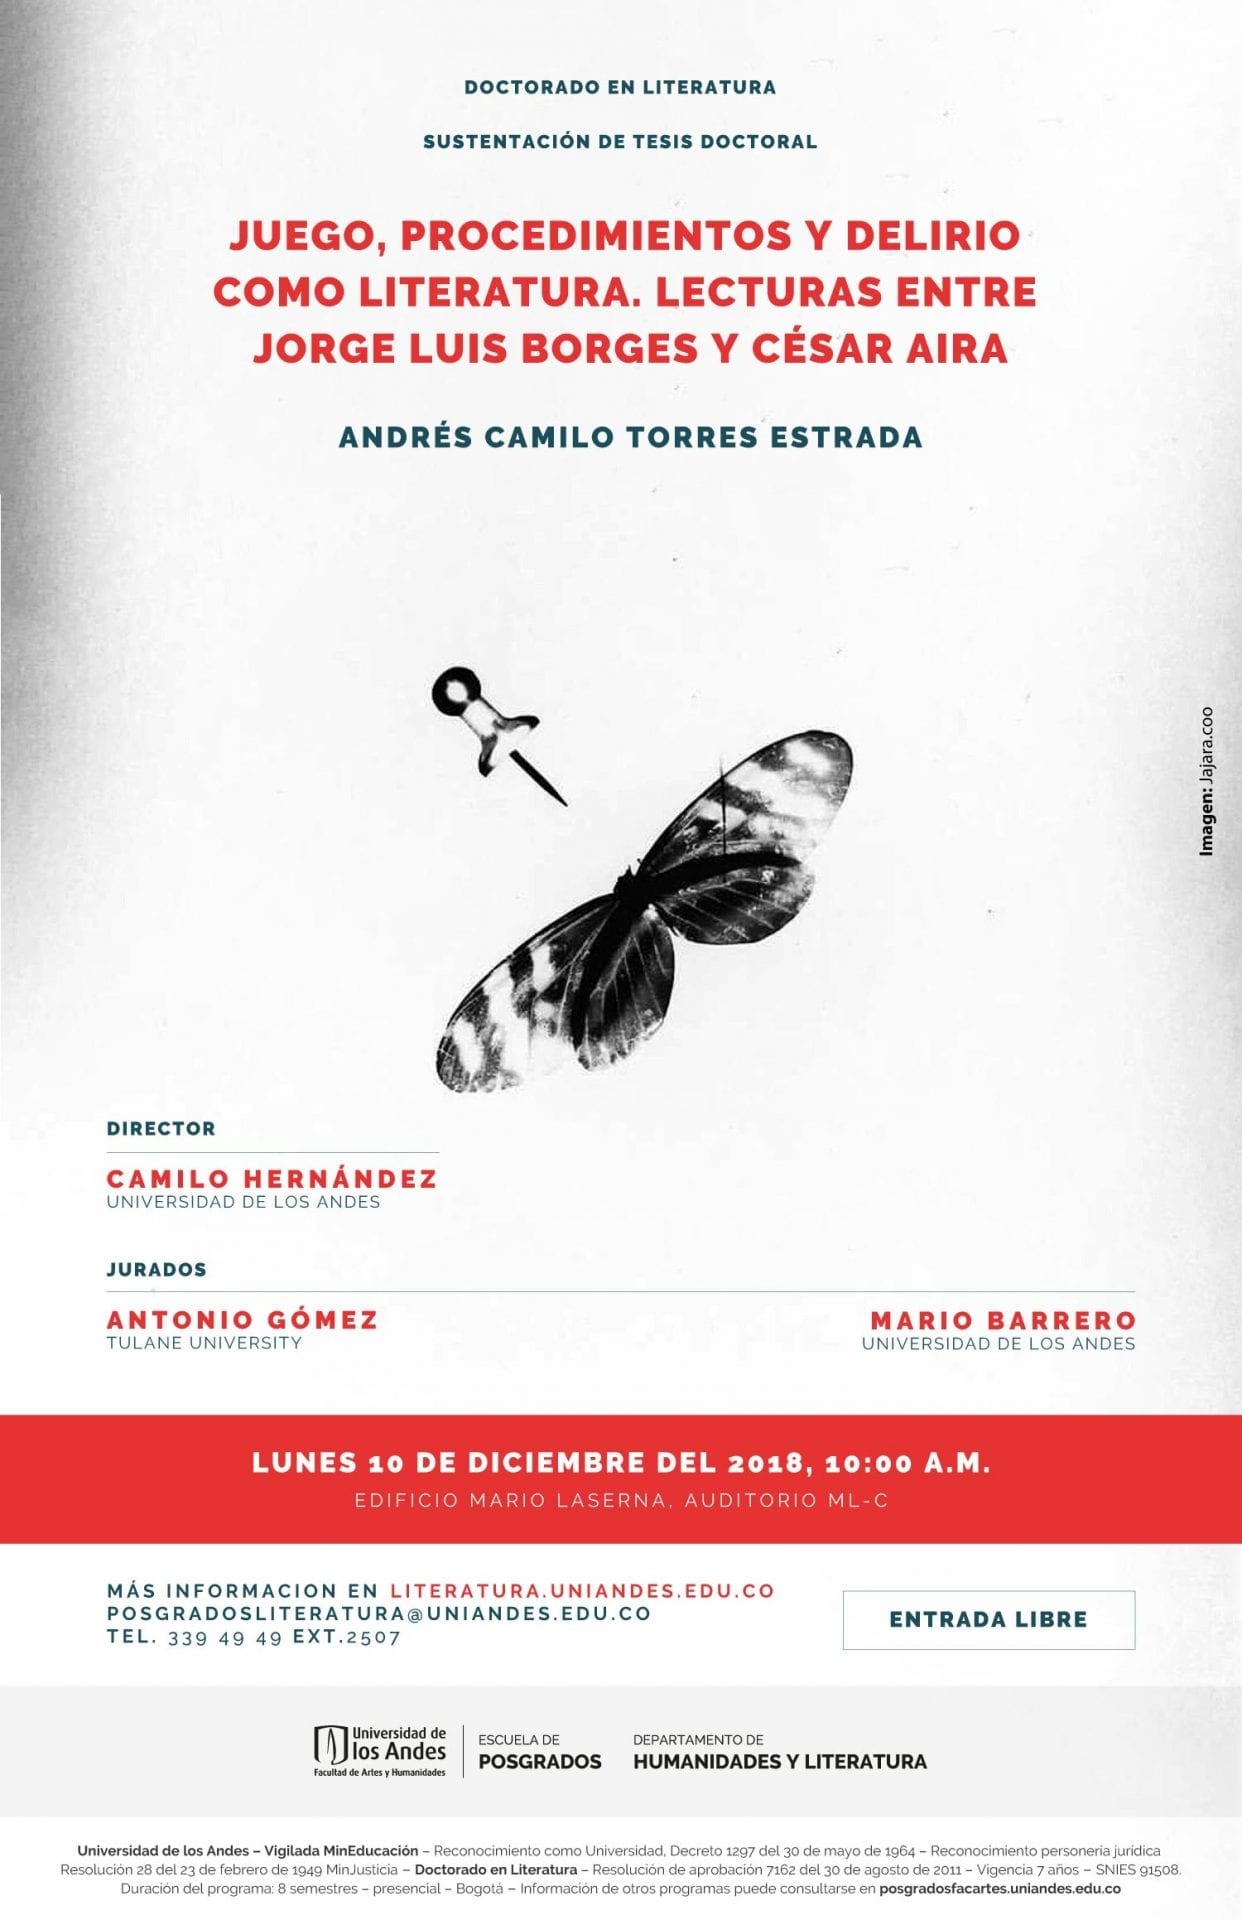 Sustentación de tesis doctoral en Literatura de Camilo Torres. 10 de diciembre del 2018, 10:00 a.m.